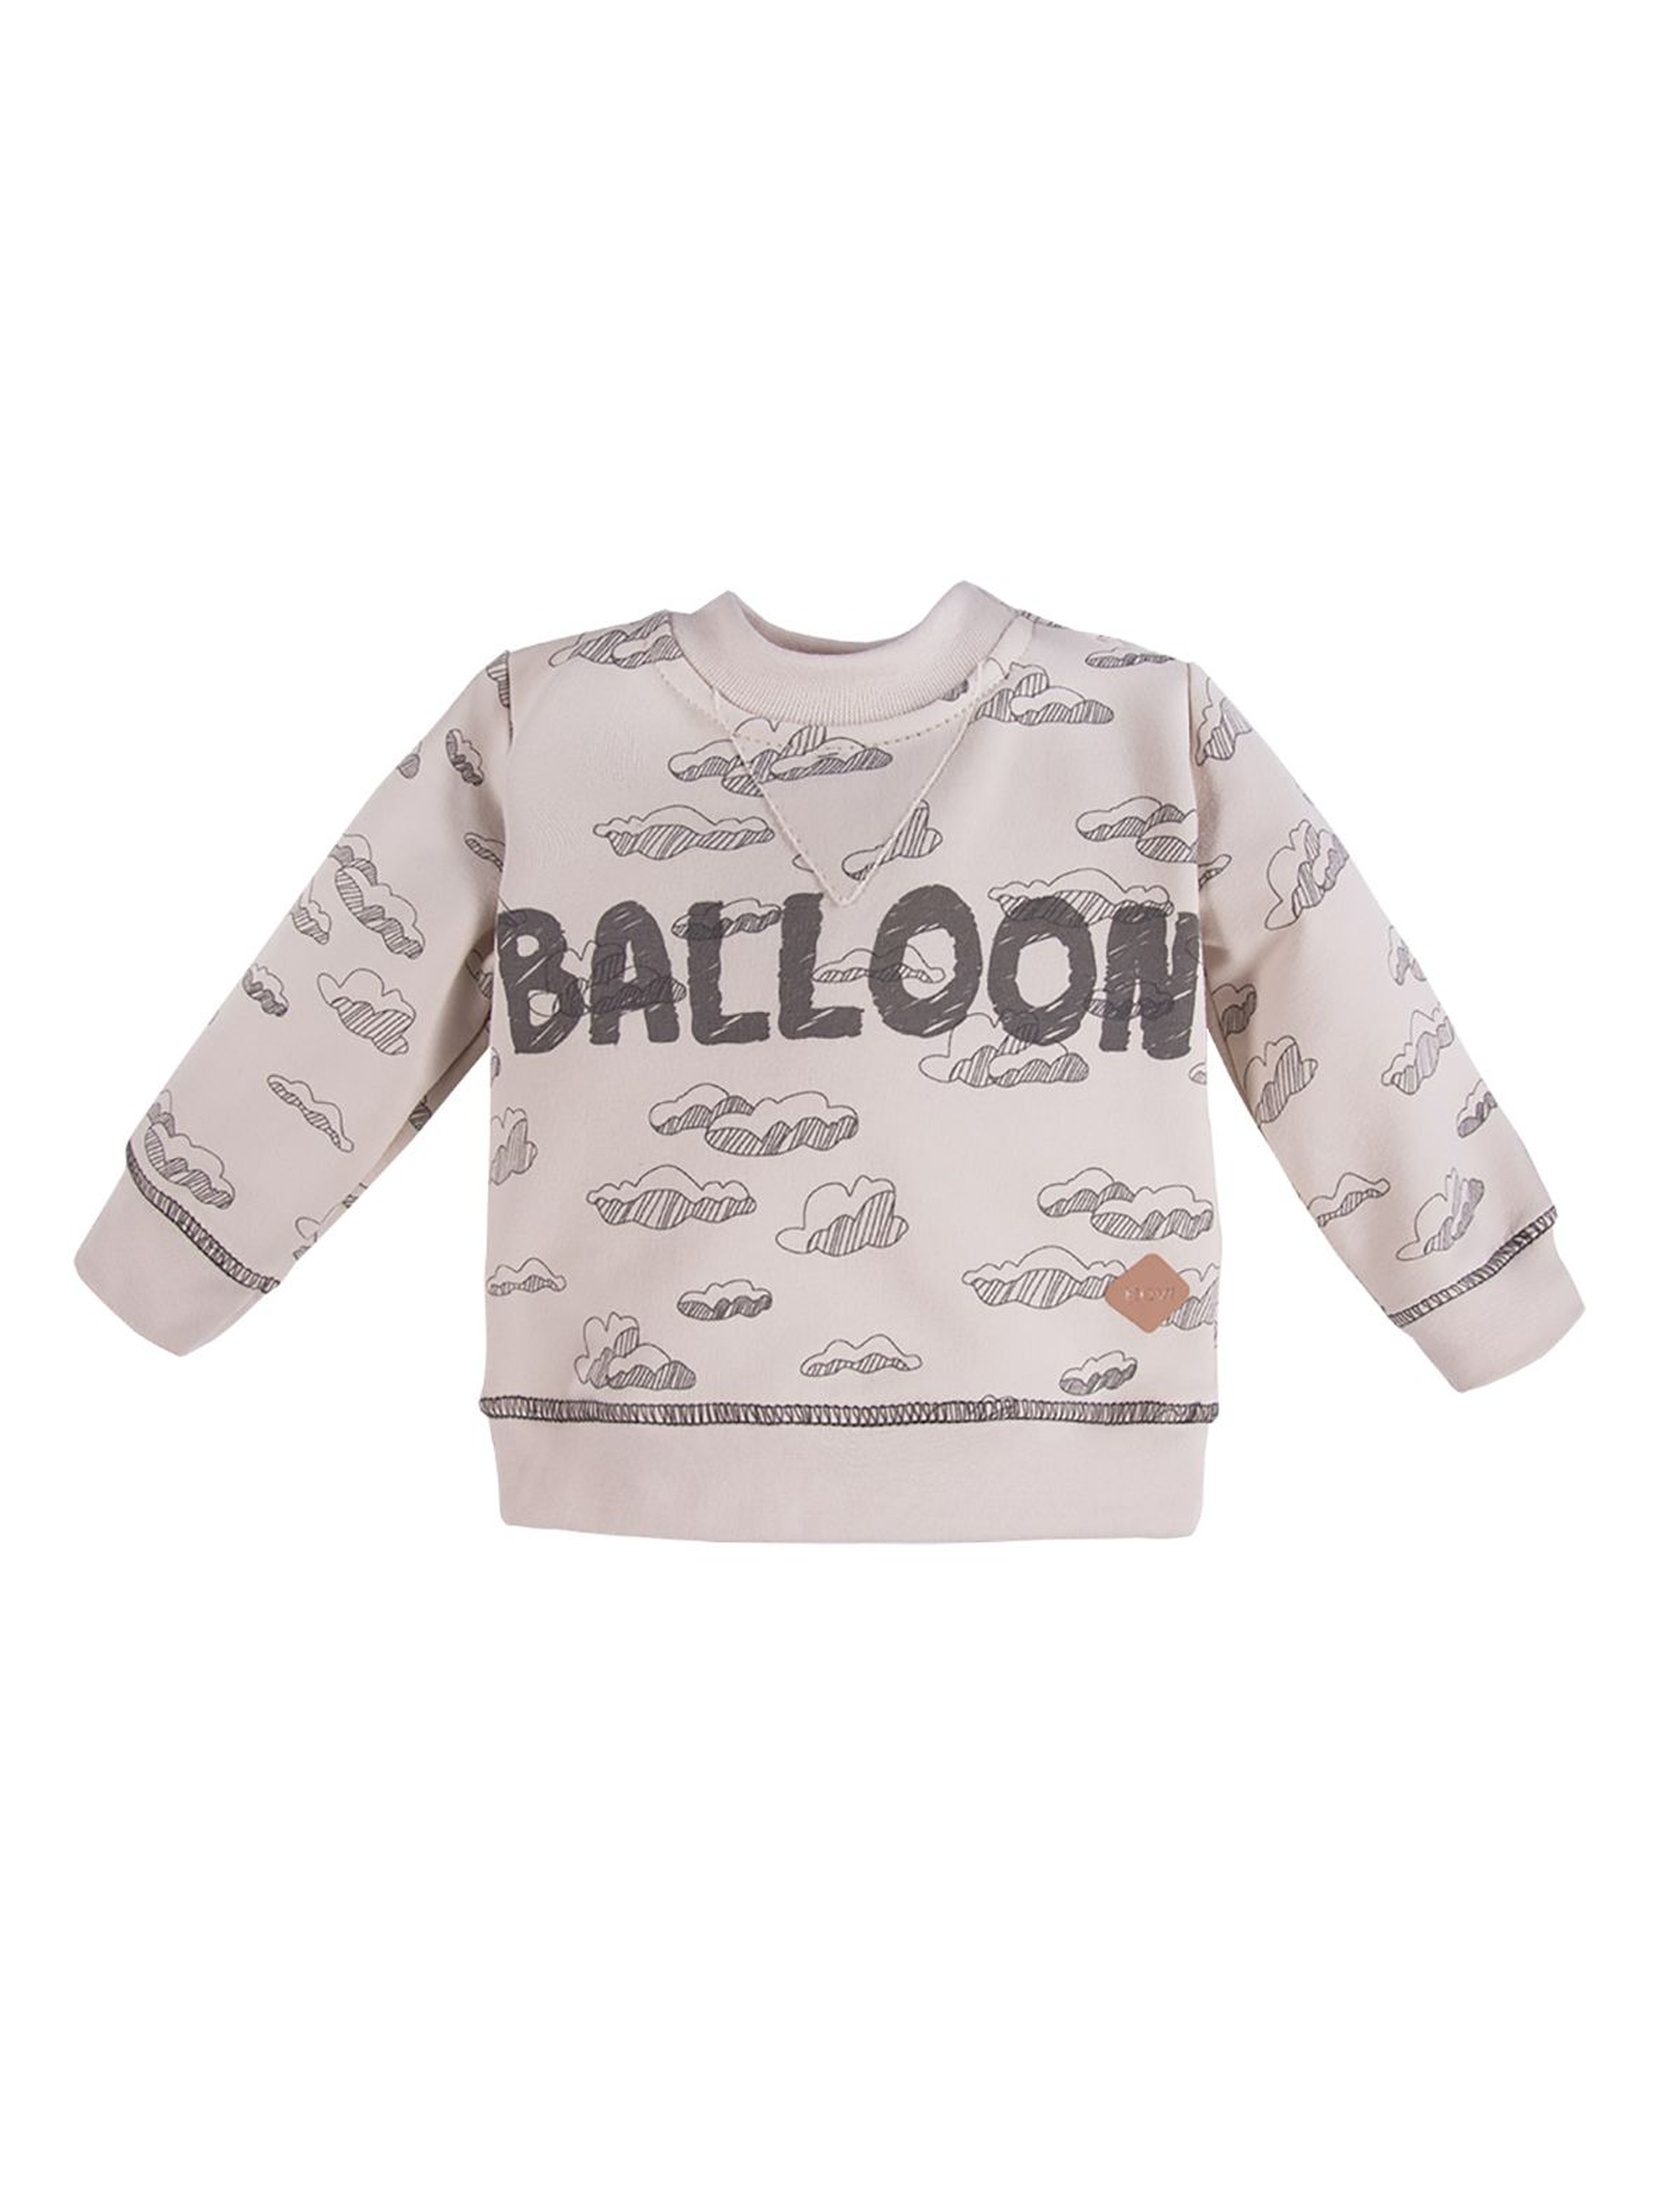 Bawełniana Bluza dresowa z kolekcji Balloons - beżowa